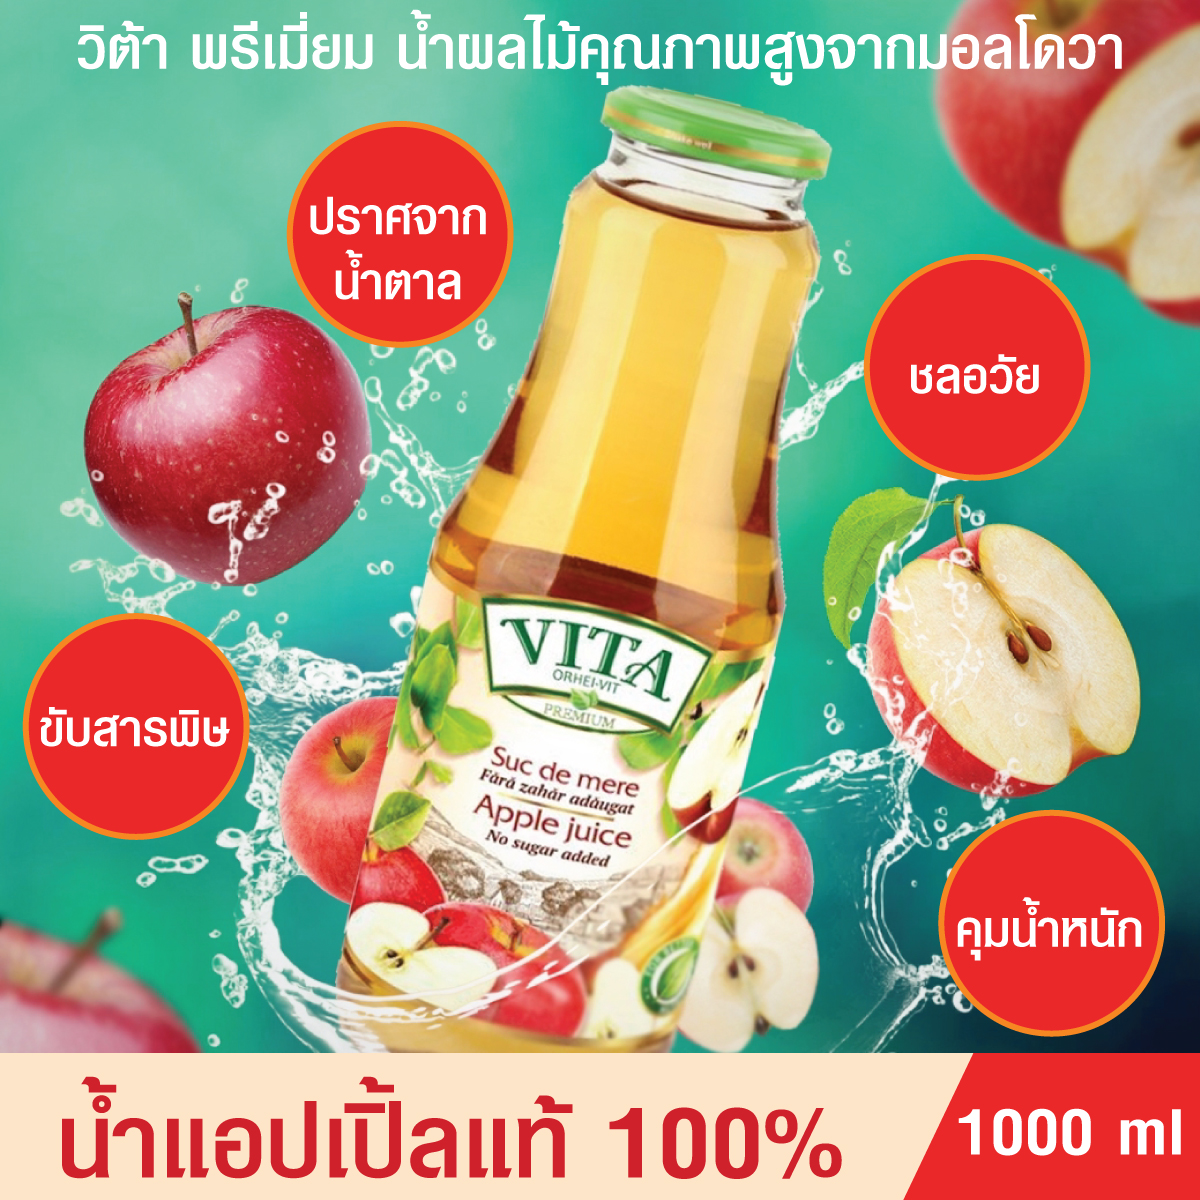 น้ำผลไม้แท้ 100% น้ำแอปเปิ้ล ไม่ผสมน้ำตาล 1ลิตร ช่วยชลอวัย ขับสารพิษ คุมน้ำหนัก ขายดีในยุโรปและ35ประเทศทั่วโลก VITA ORHEI-VIT Apple juice No Sugar added 1000ml.